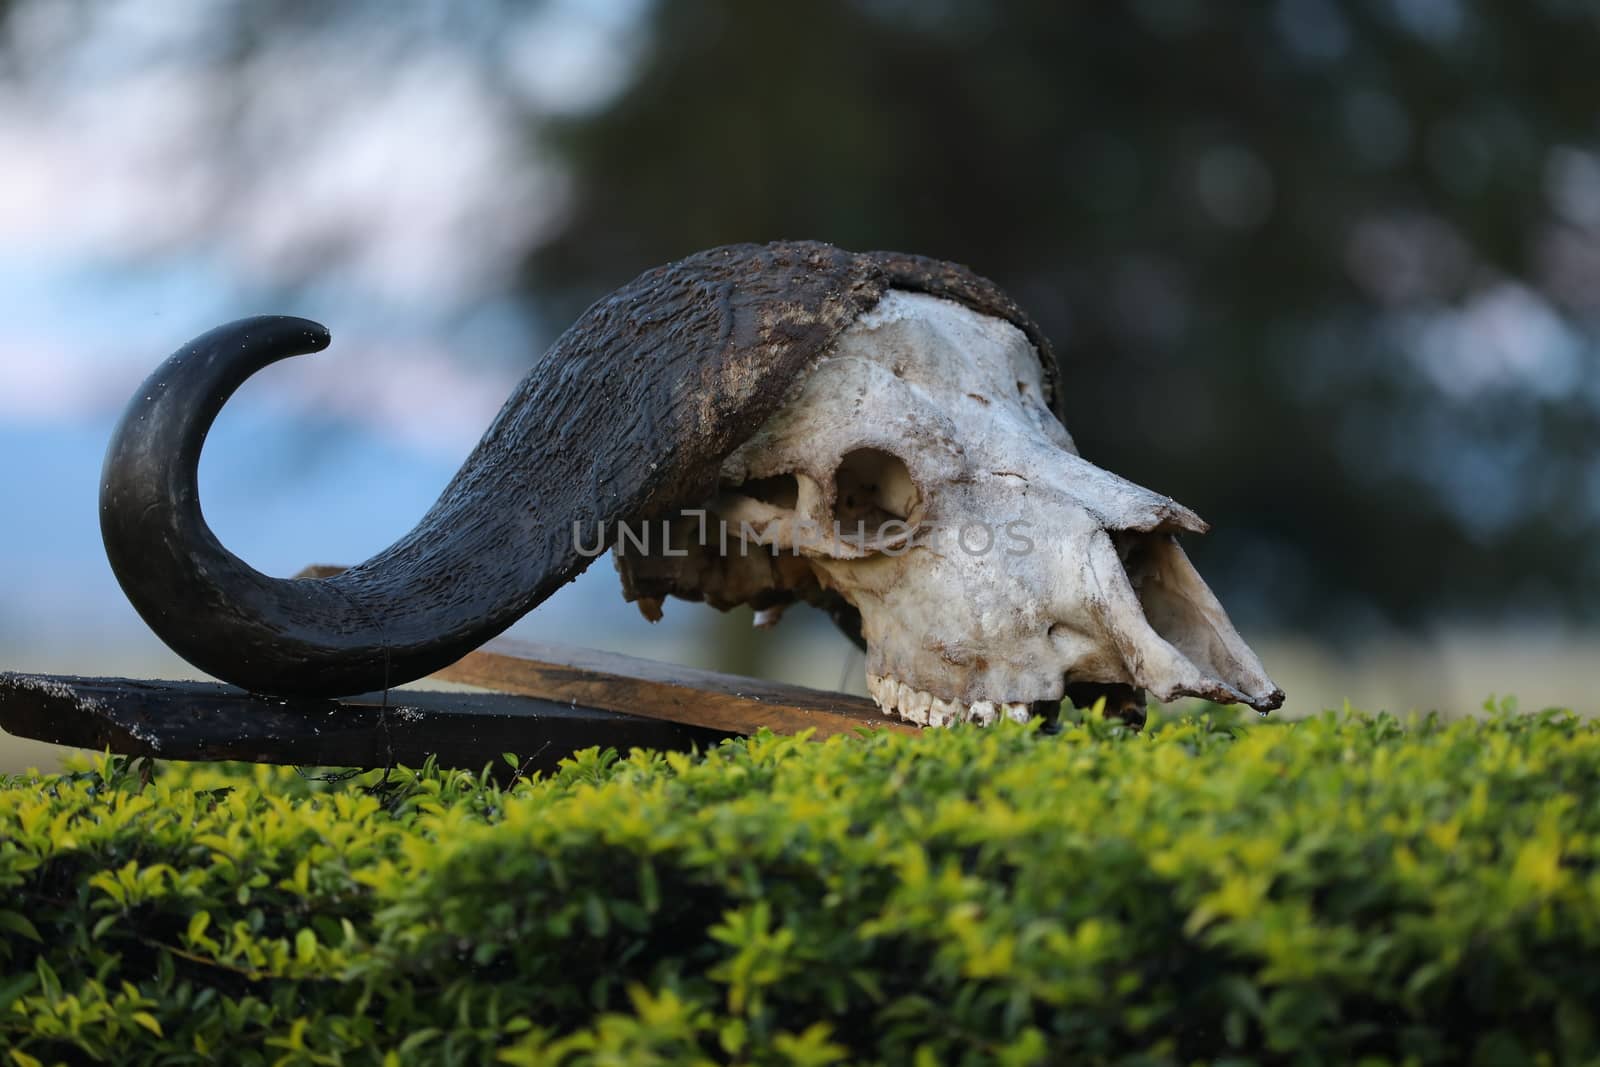 Animal Skull by rajastills